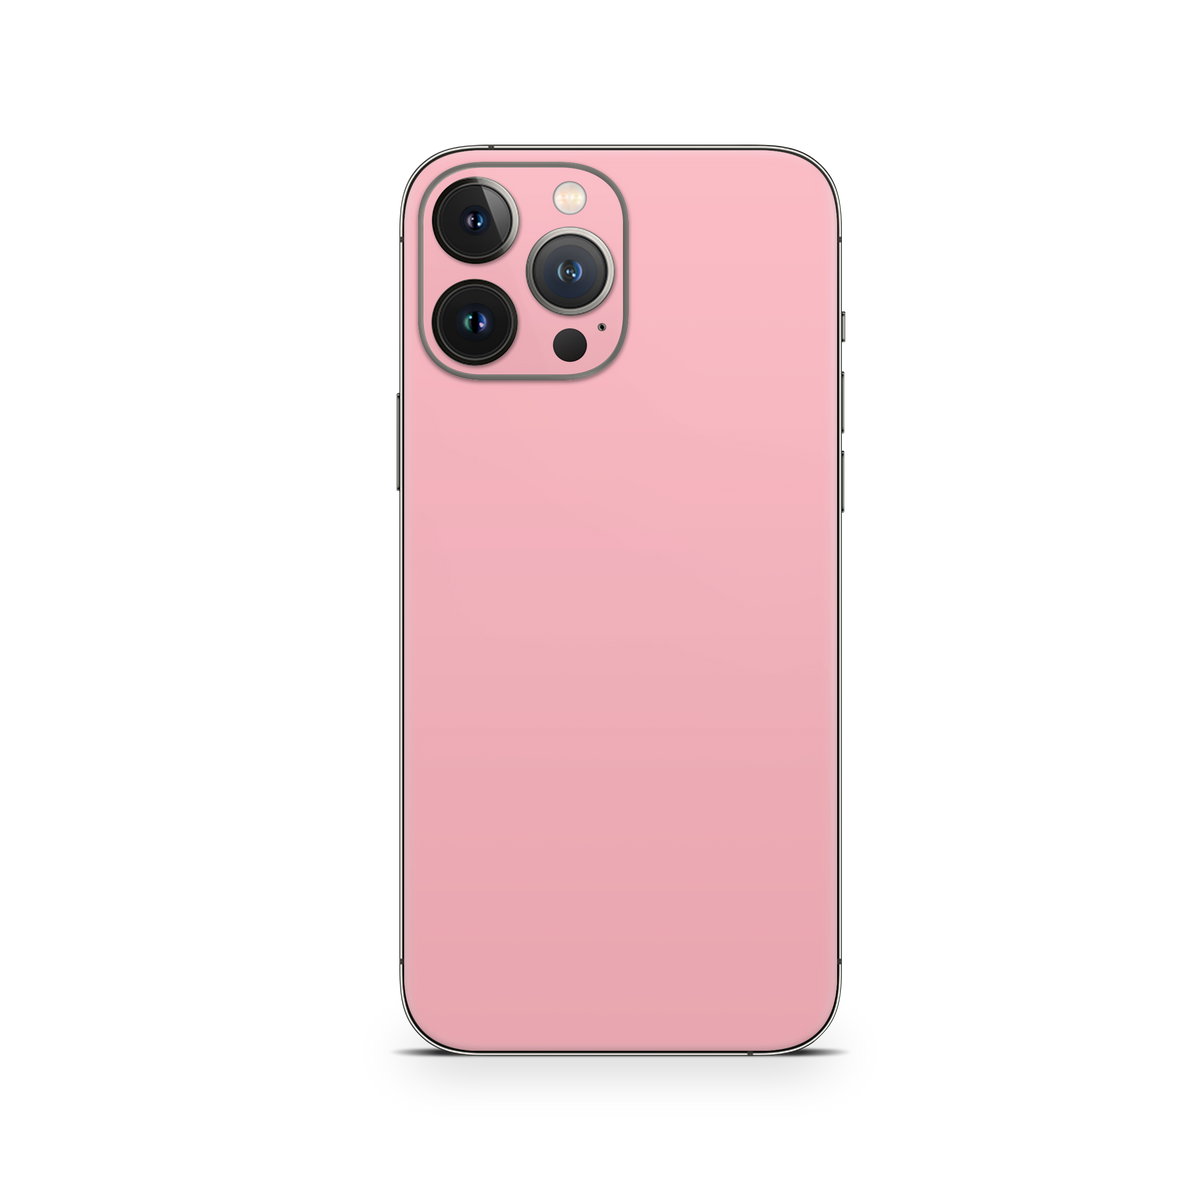 Apple iPhone Pastel Pink Skin